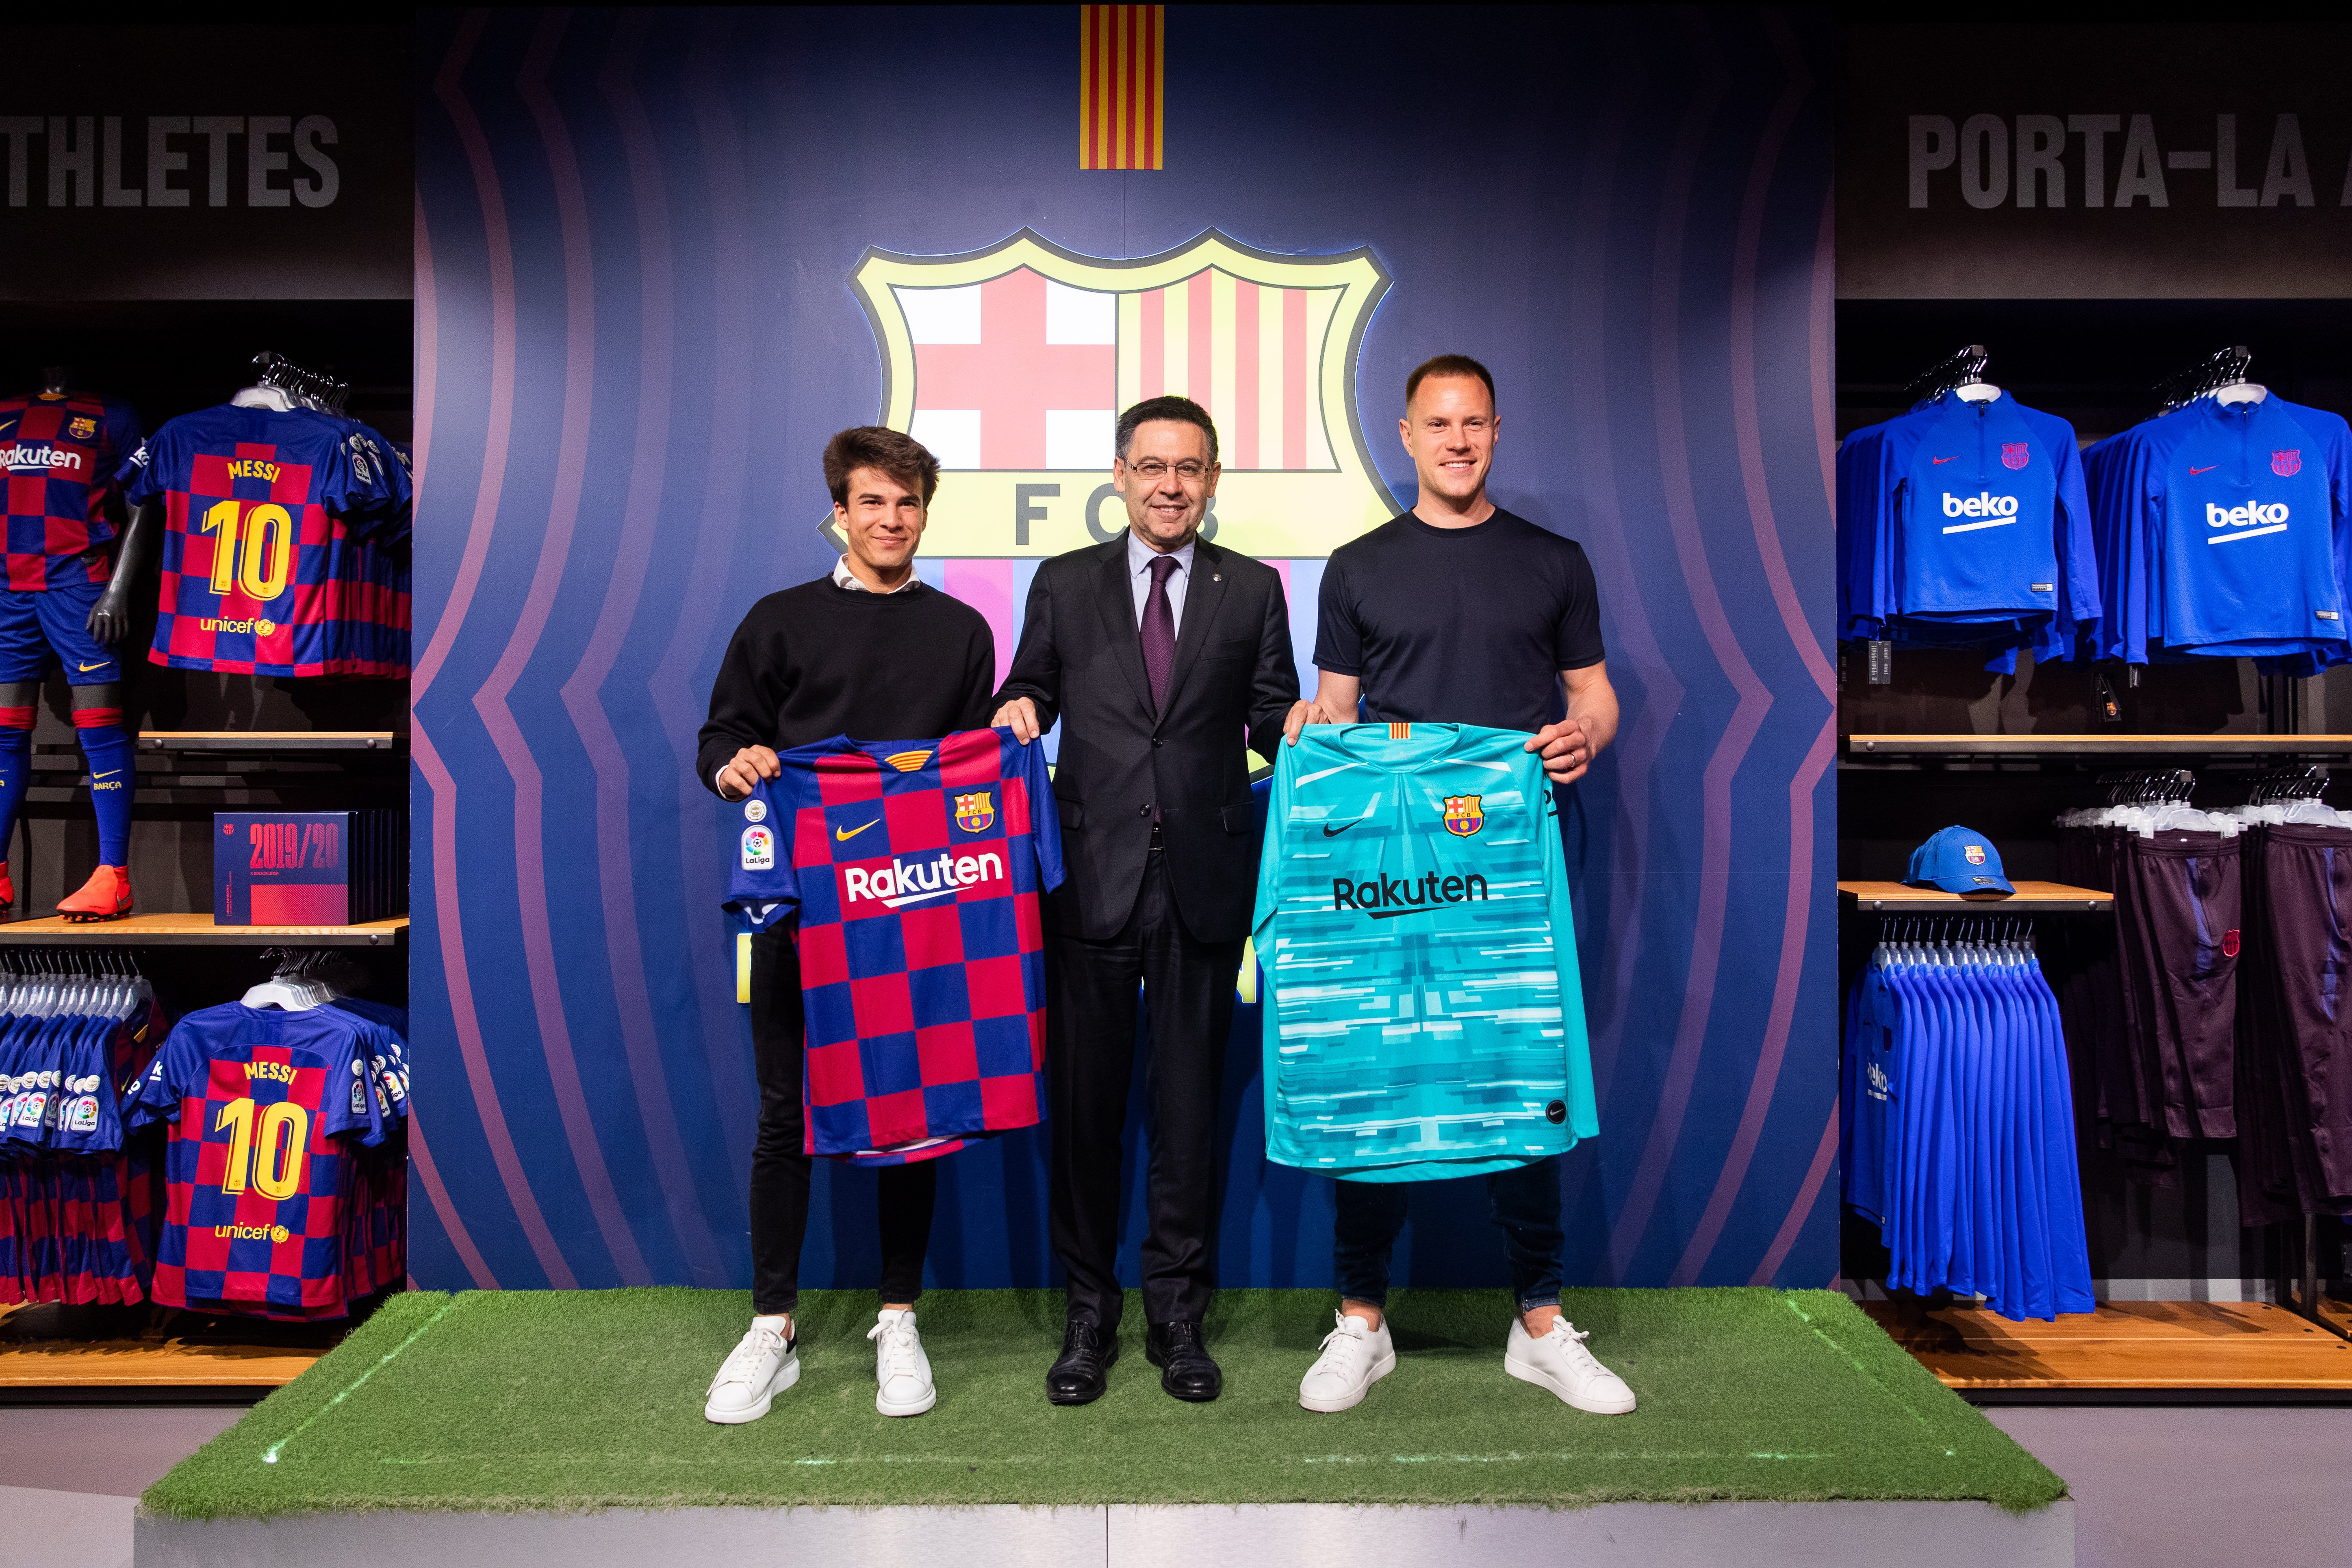 El Barça traeix la història amb una samarreta imperdonable